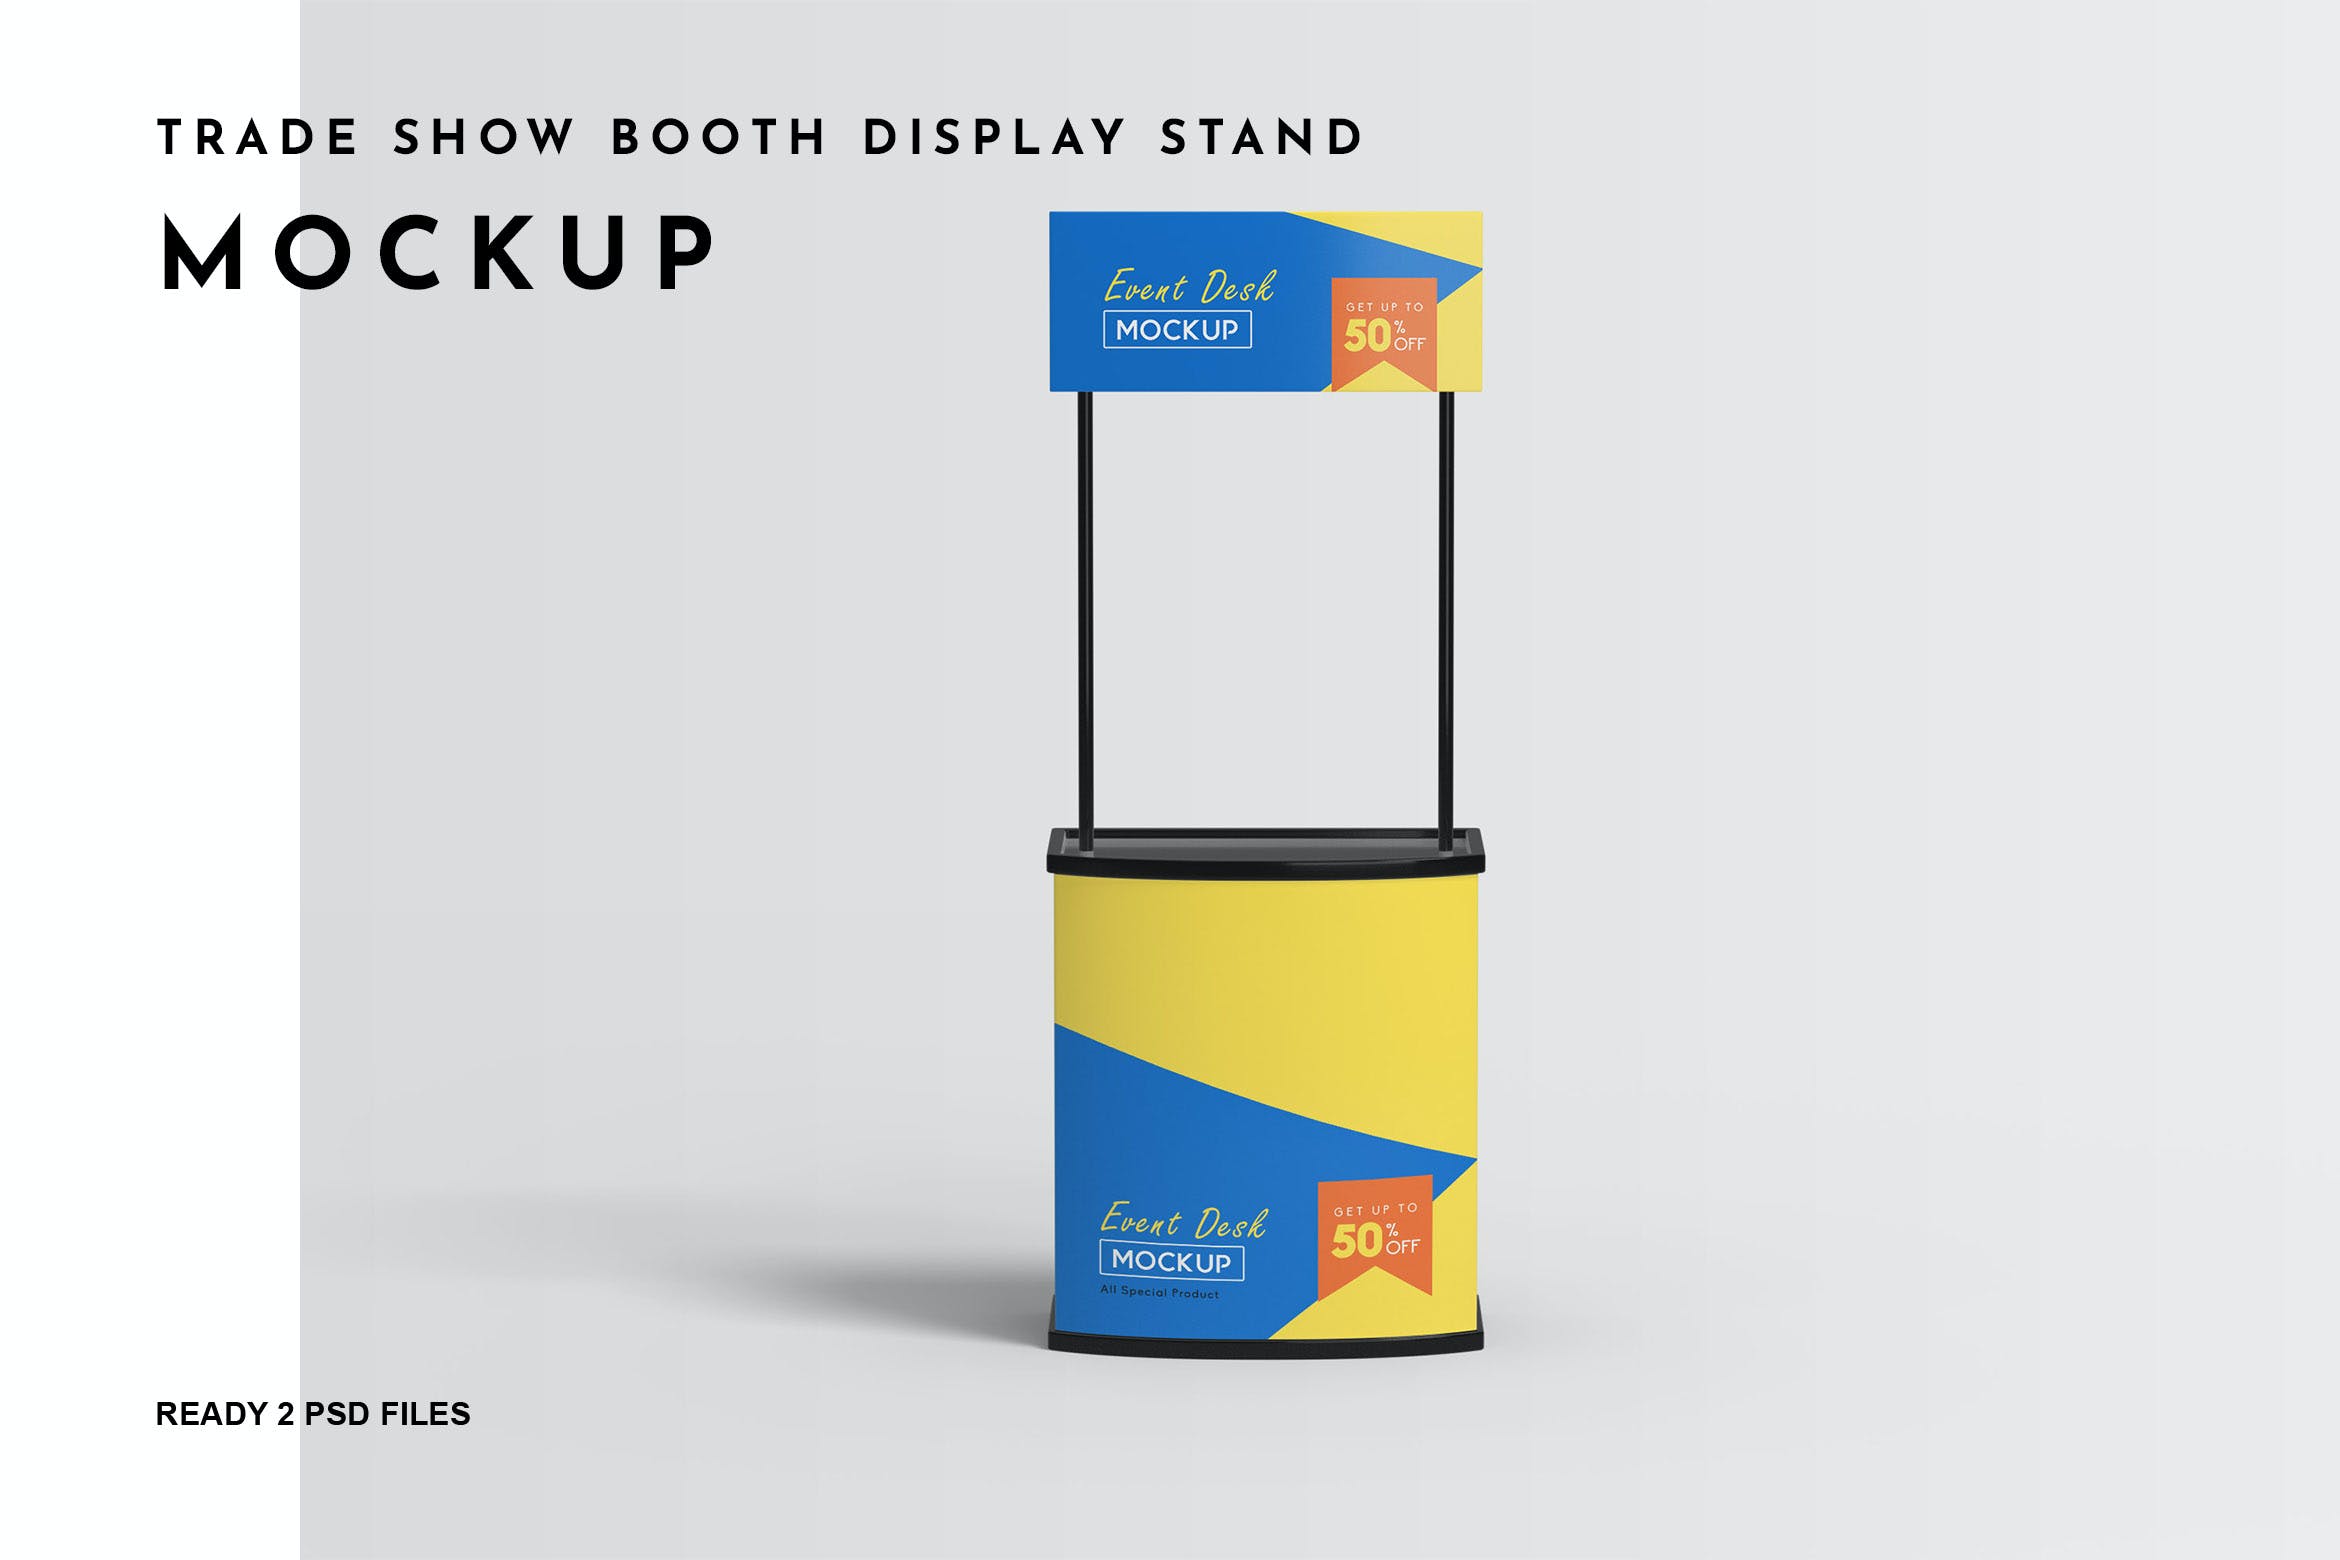 广告设计样机贸易展摊位展示架 Trade Show Booth Display Stand Mockup设计素材模板